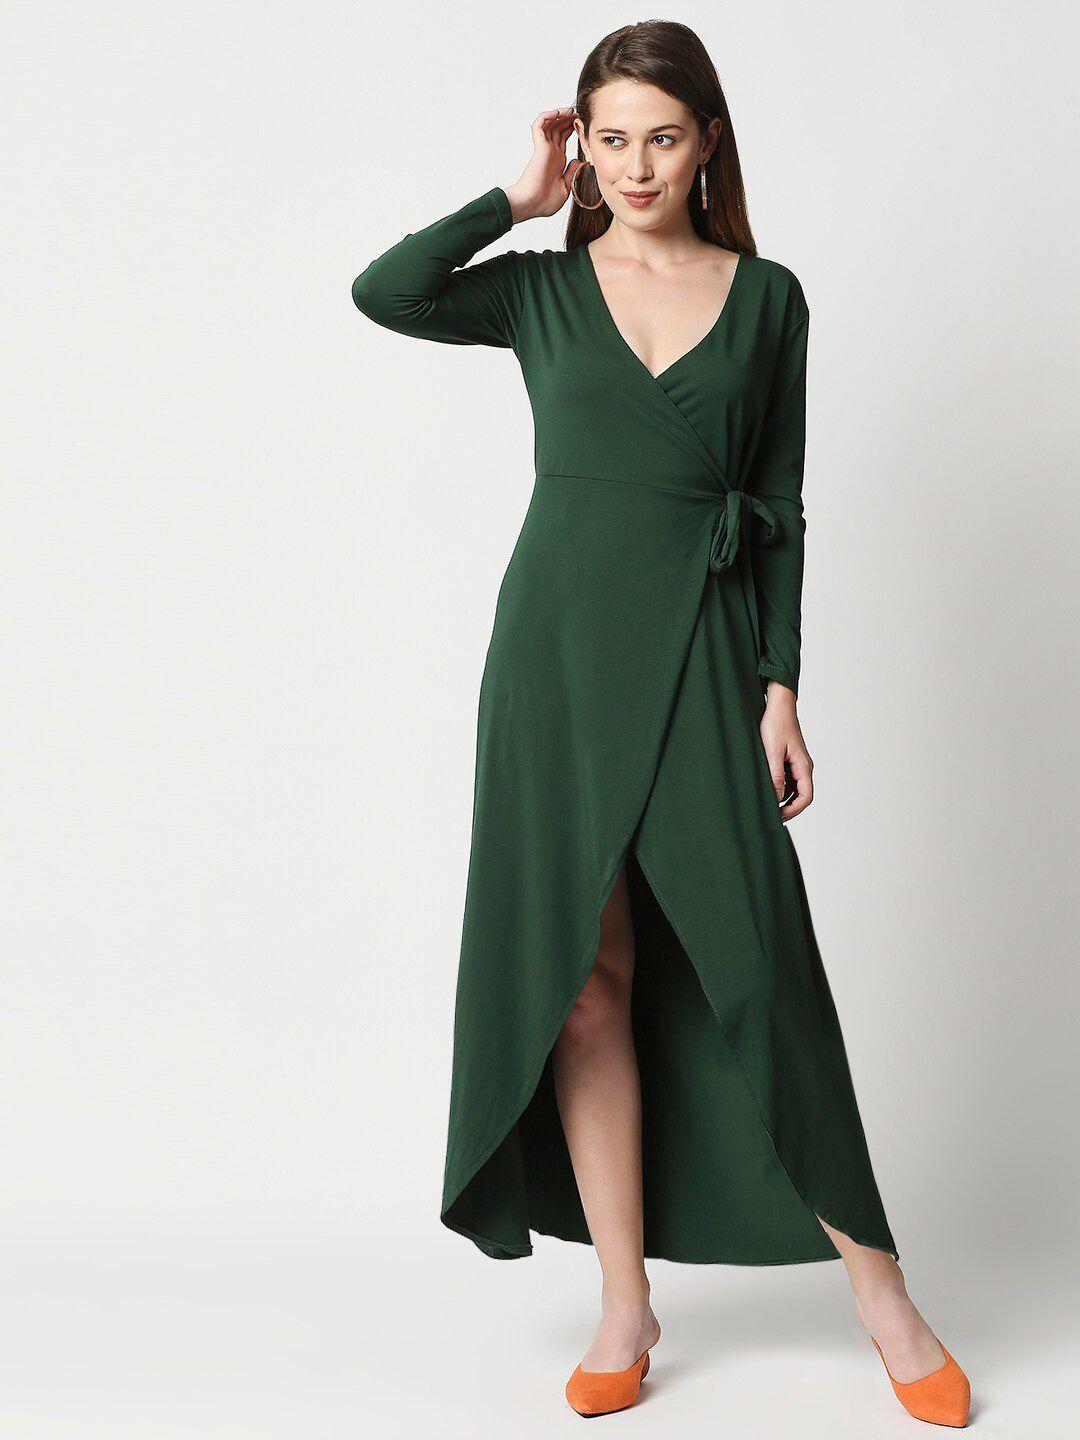 blamblack green maxi dress